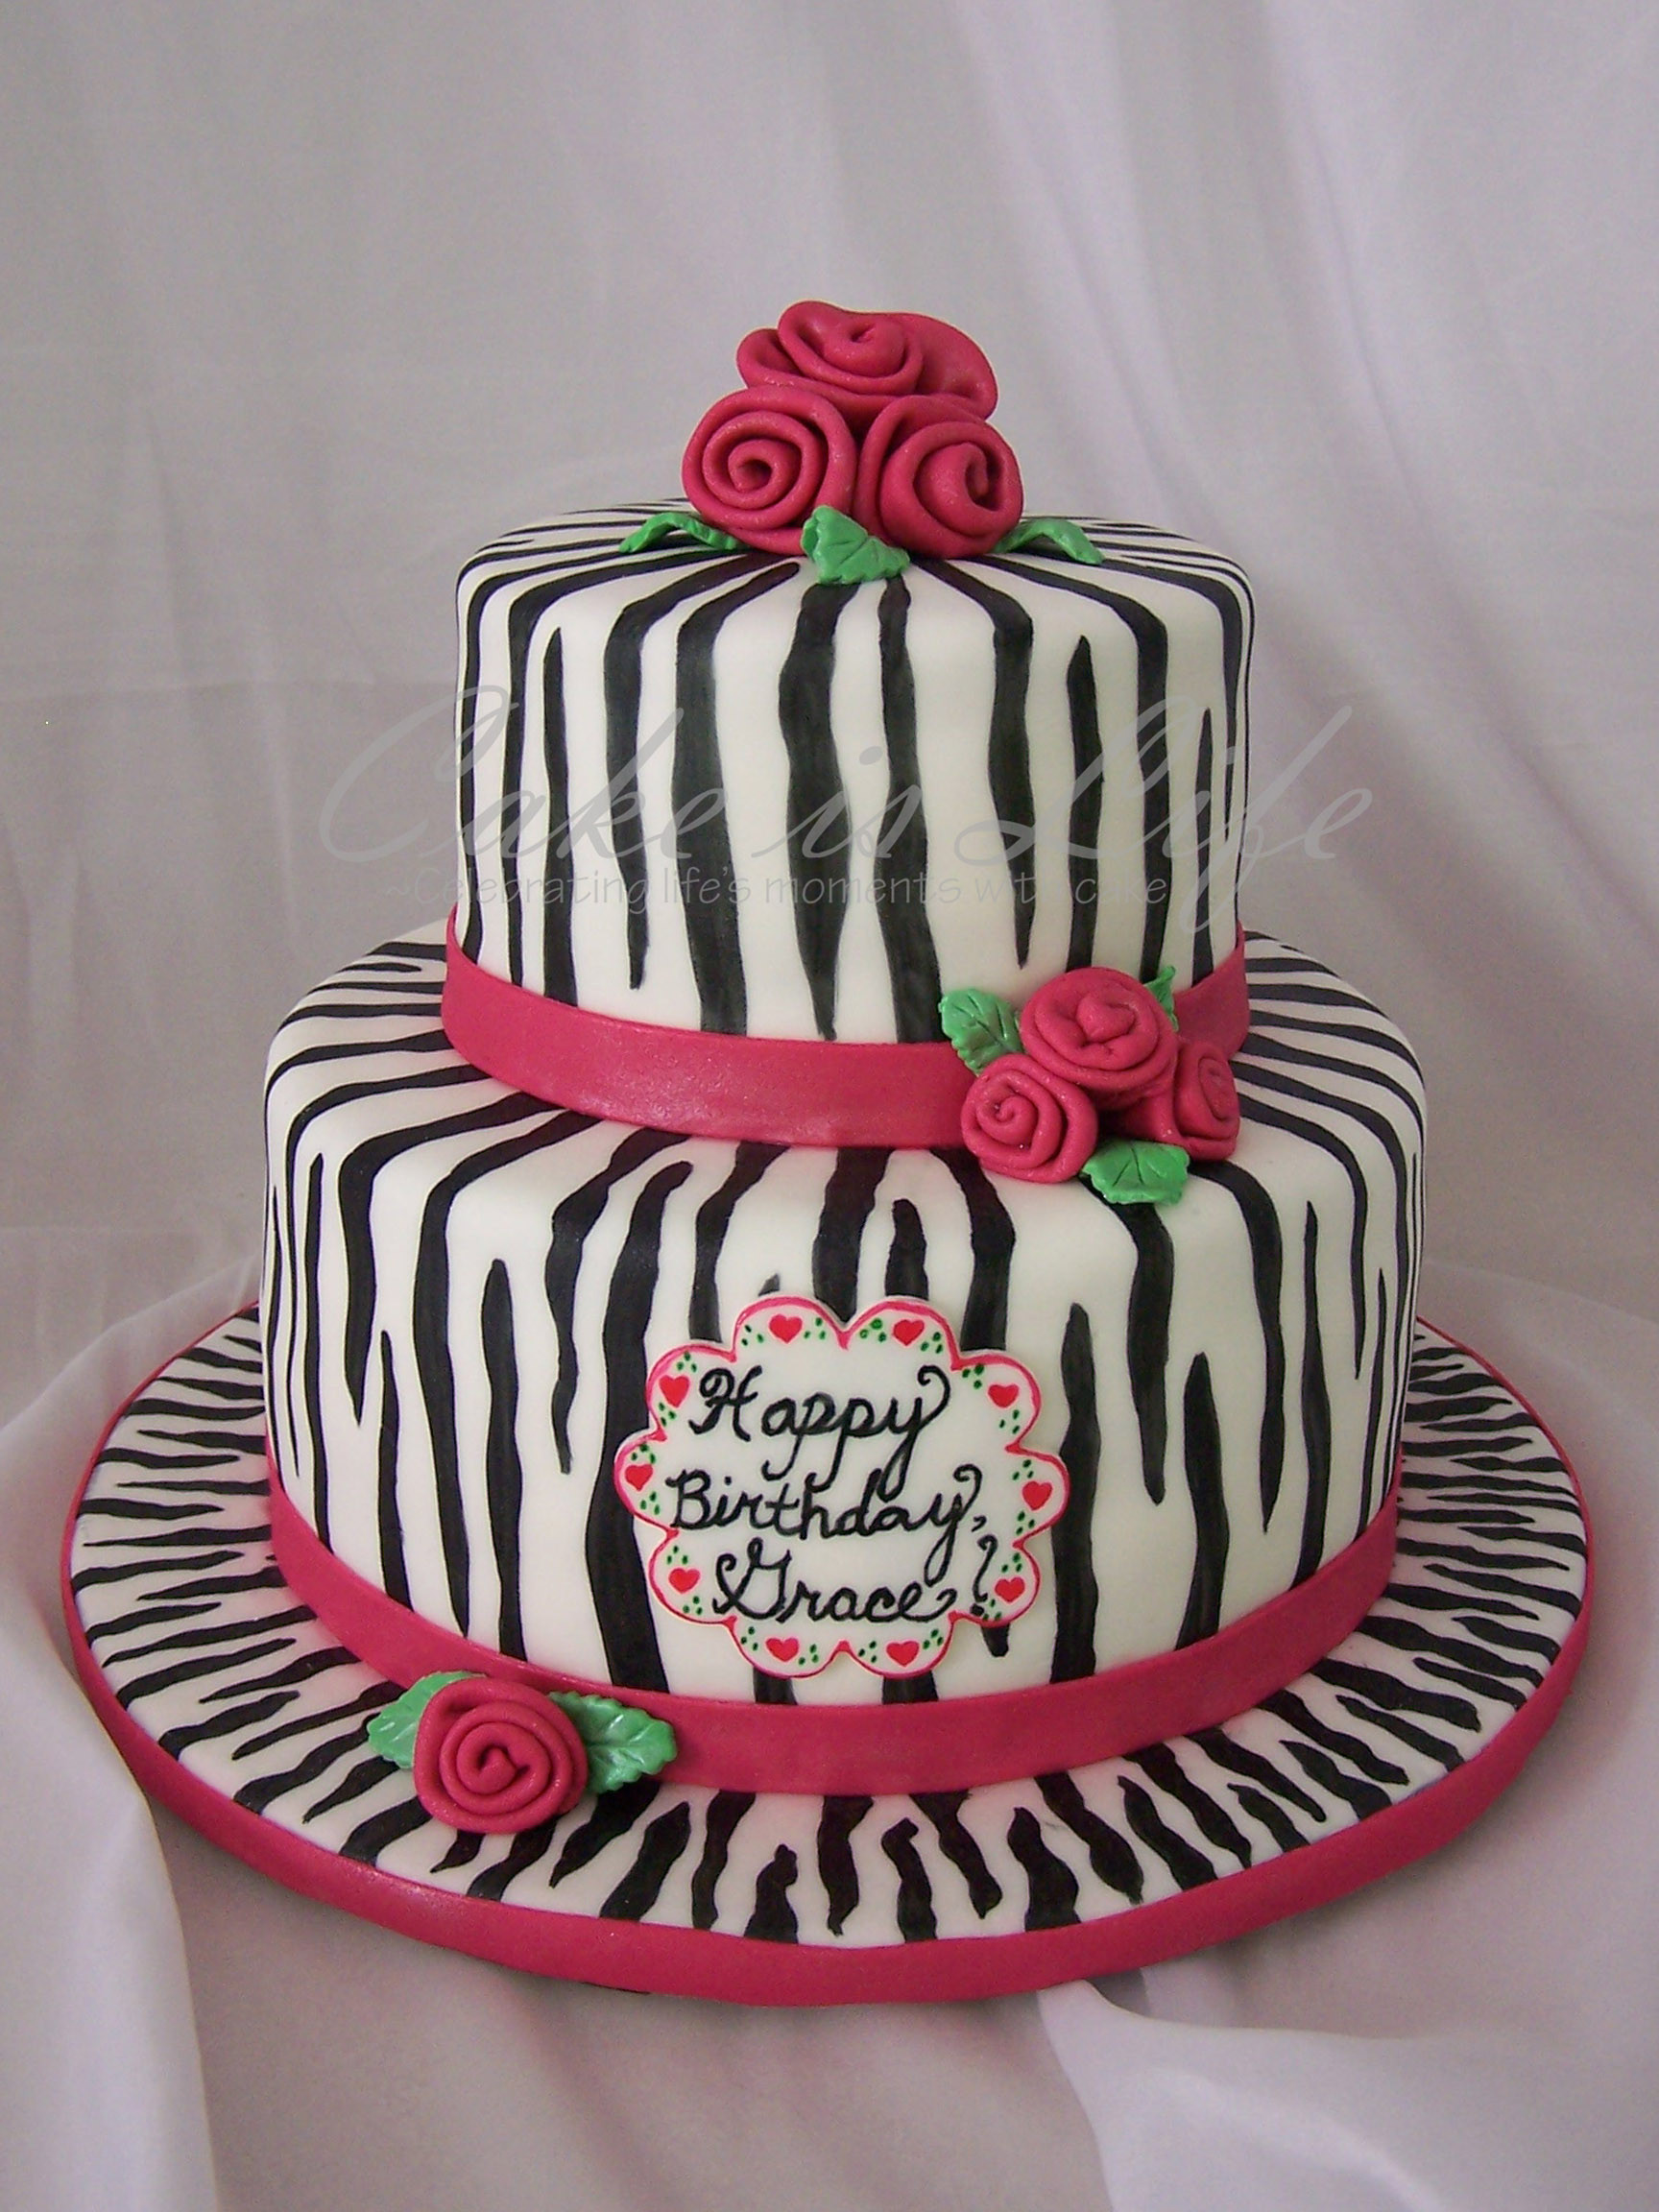 Zebra Birthday Cake
 Girly Zebra Birthday Cake